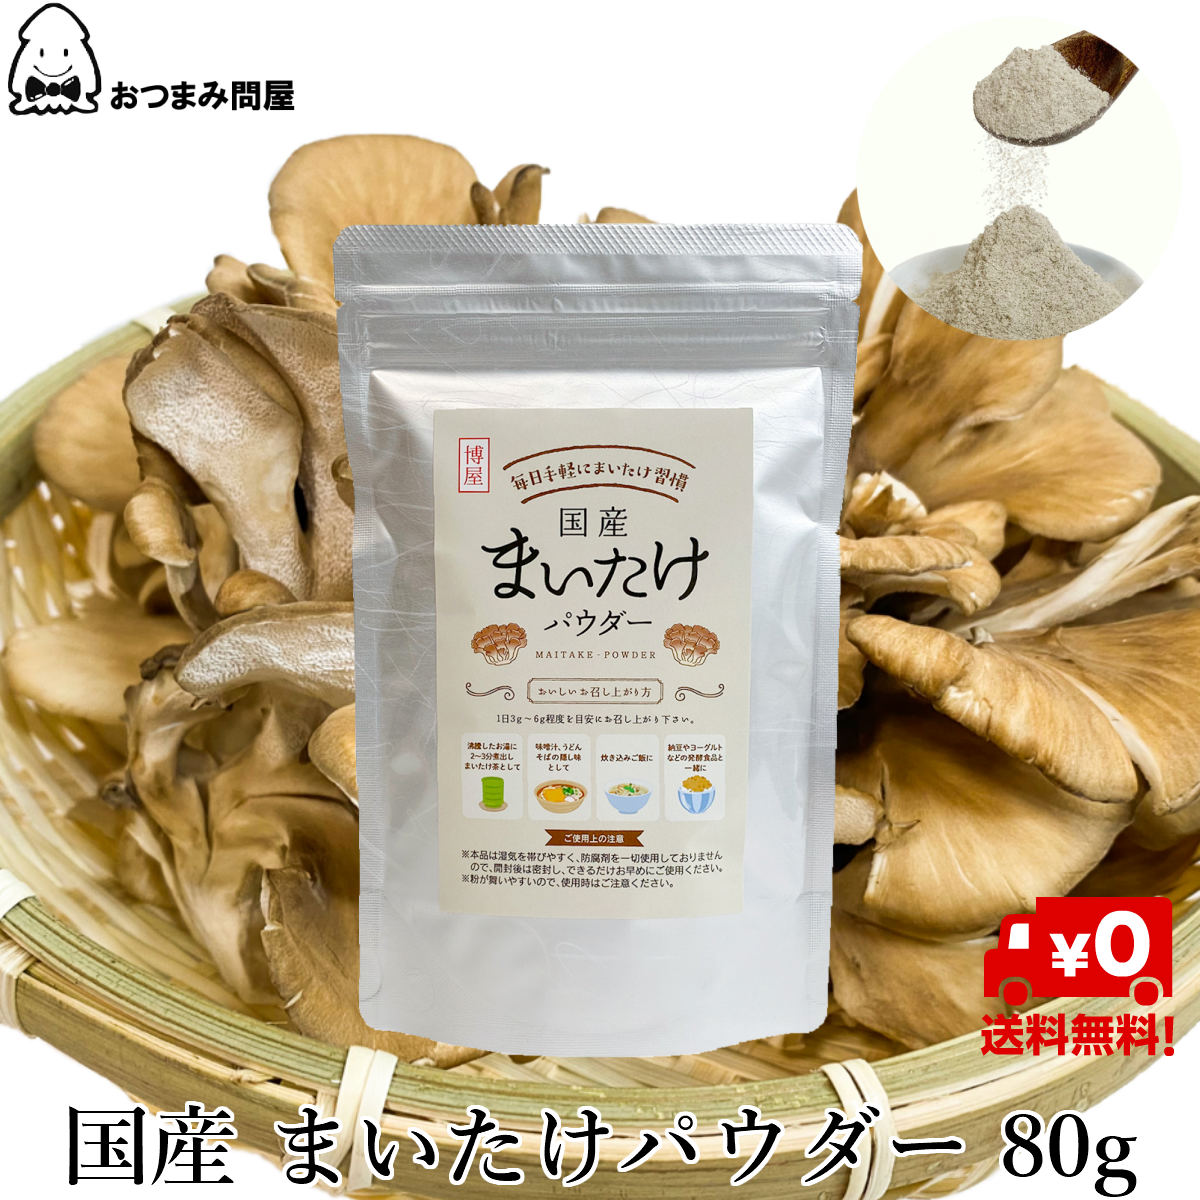 日本產 舞菇粉 舞菇粉末80g x 1包 舞菇 常溫保存 鋁包 夾鏈袋裝日本必買 | 日本樂天熱銷